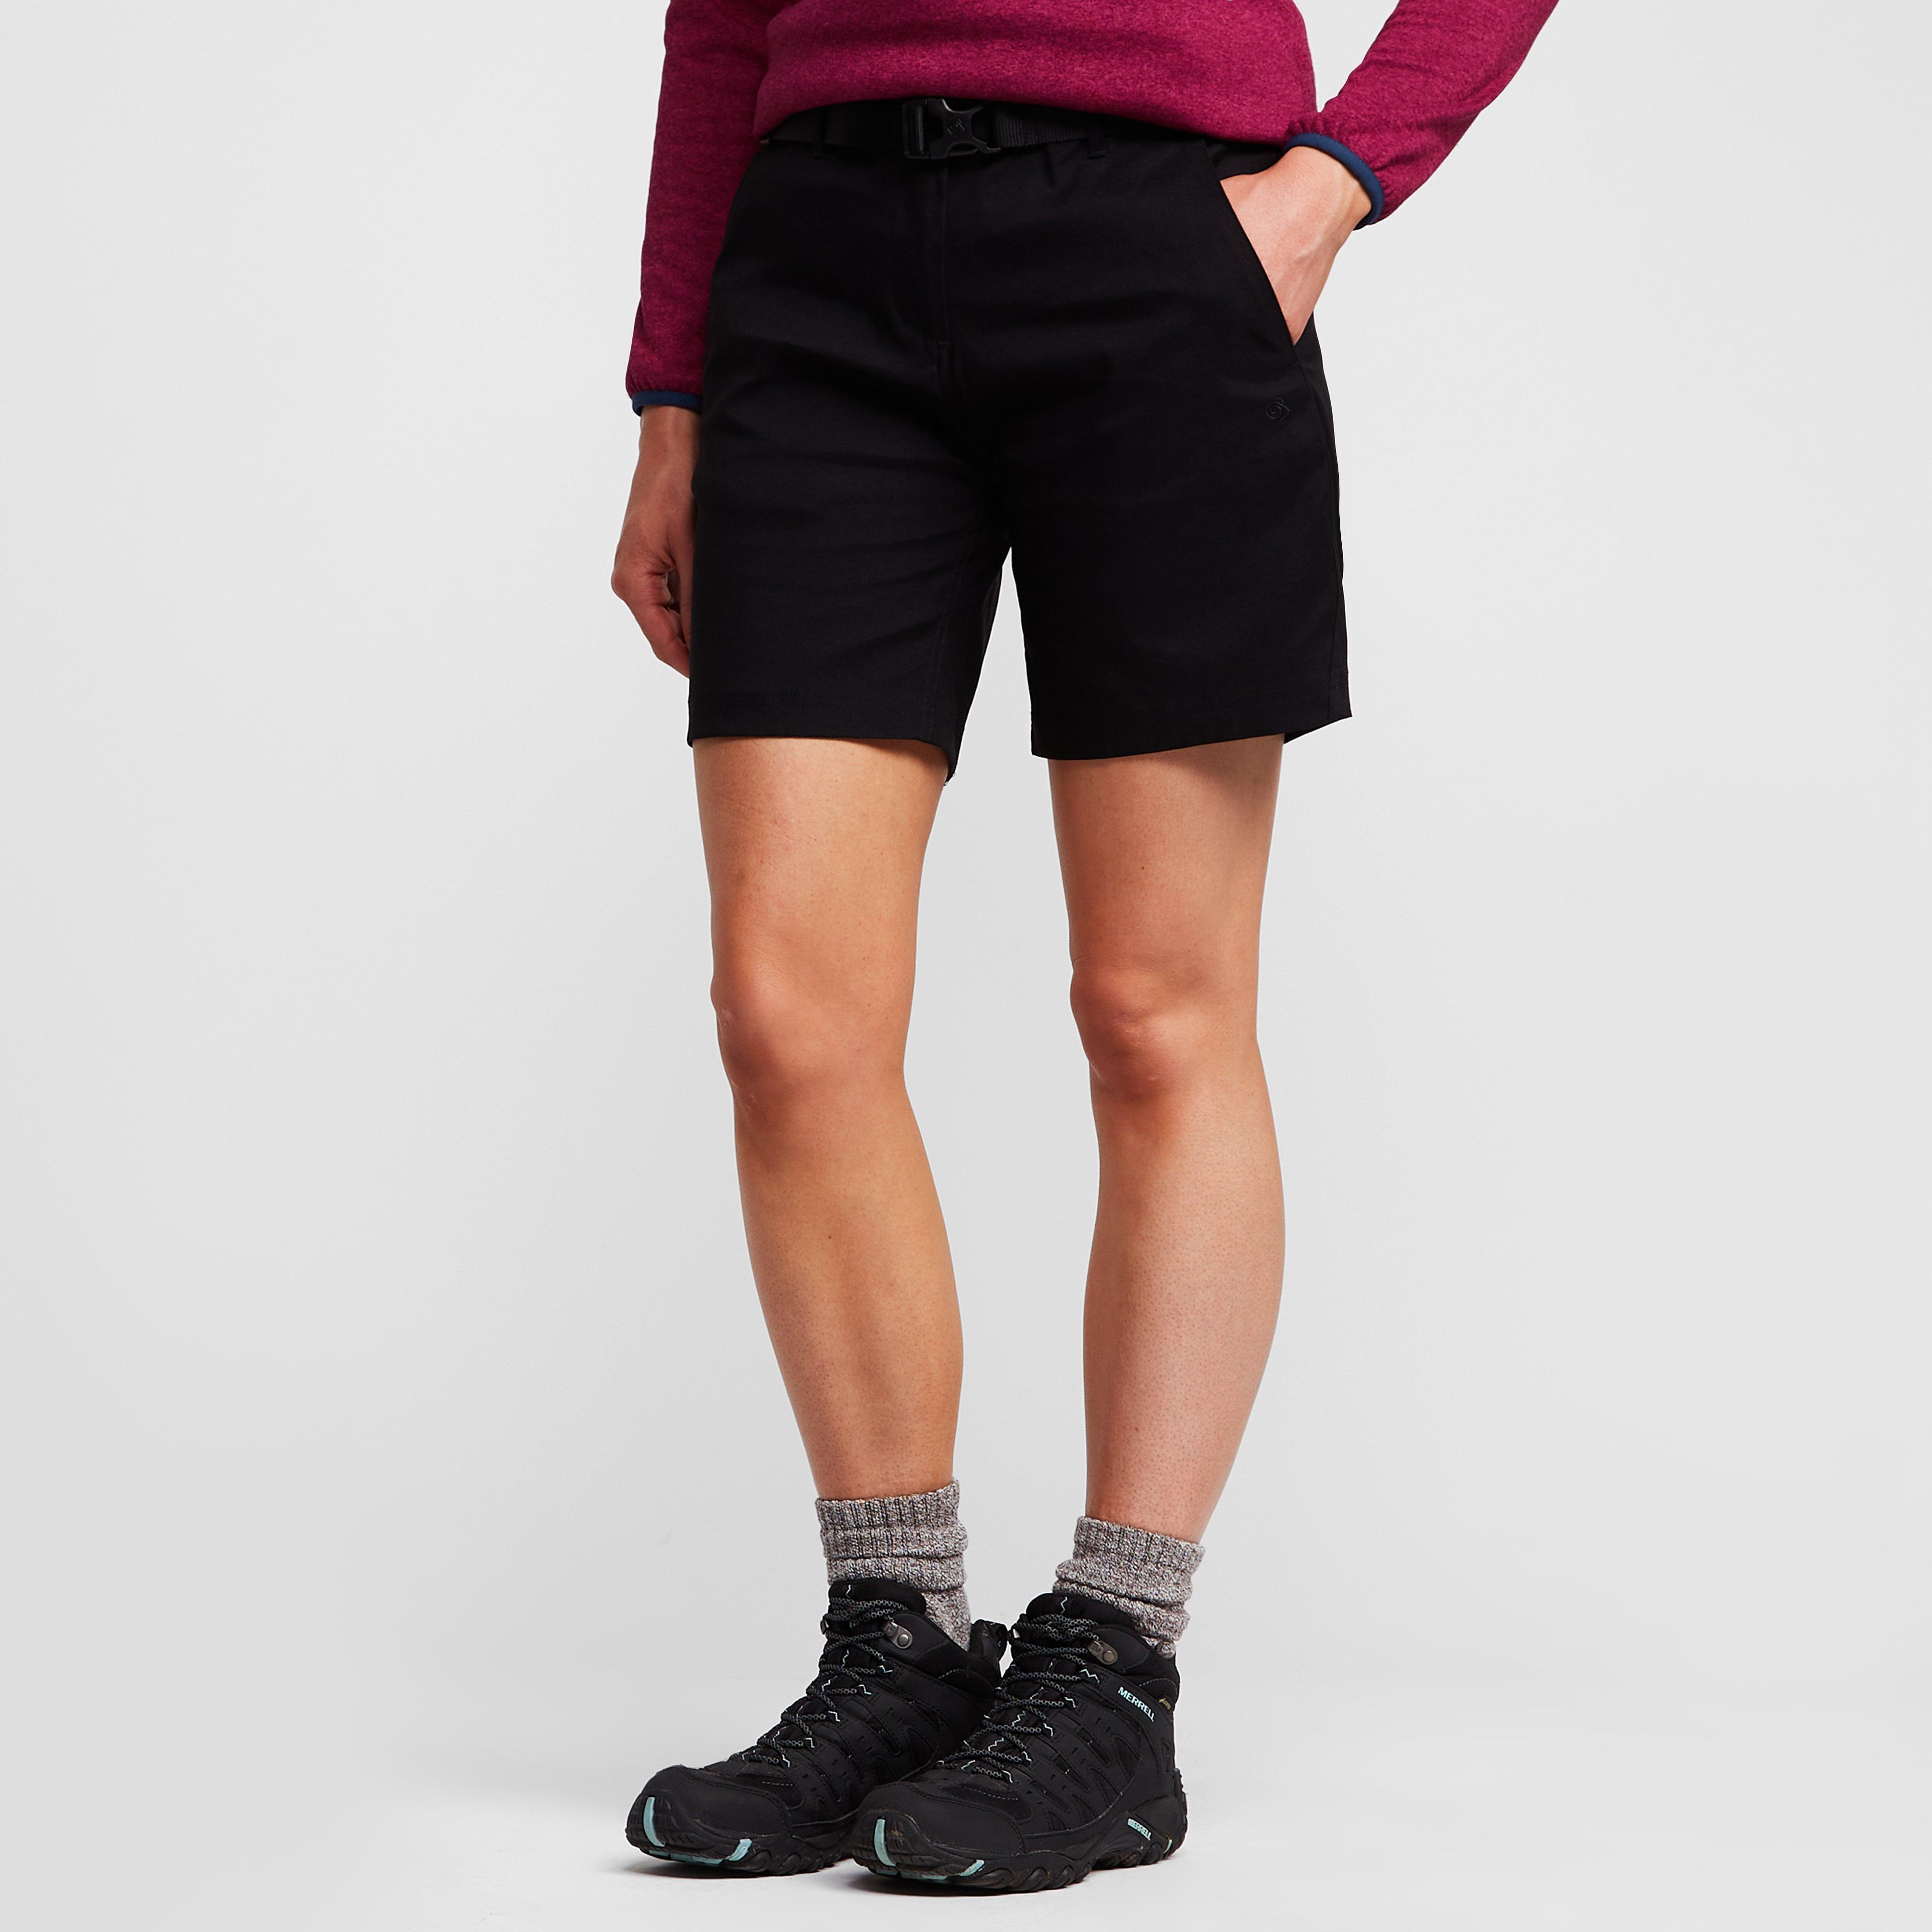 Craghoppers Womens Kiwi Pro Eco Shorts - Black/sht  Black/sht